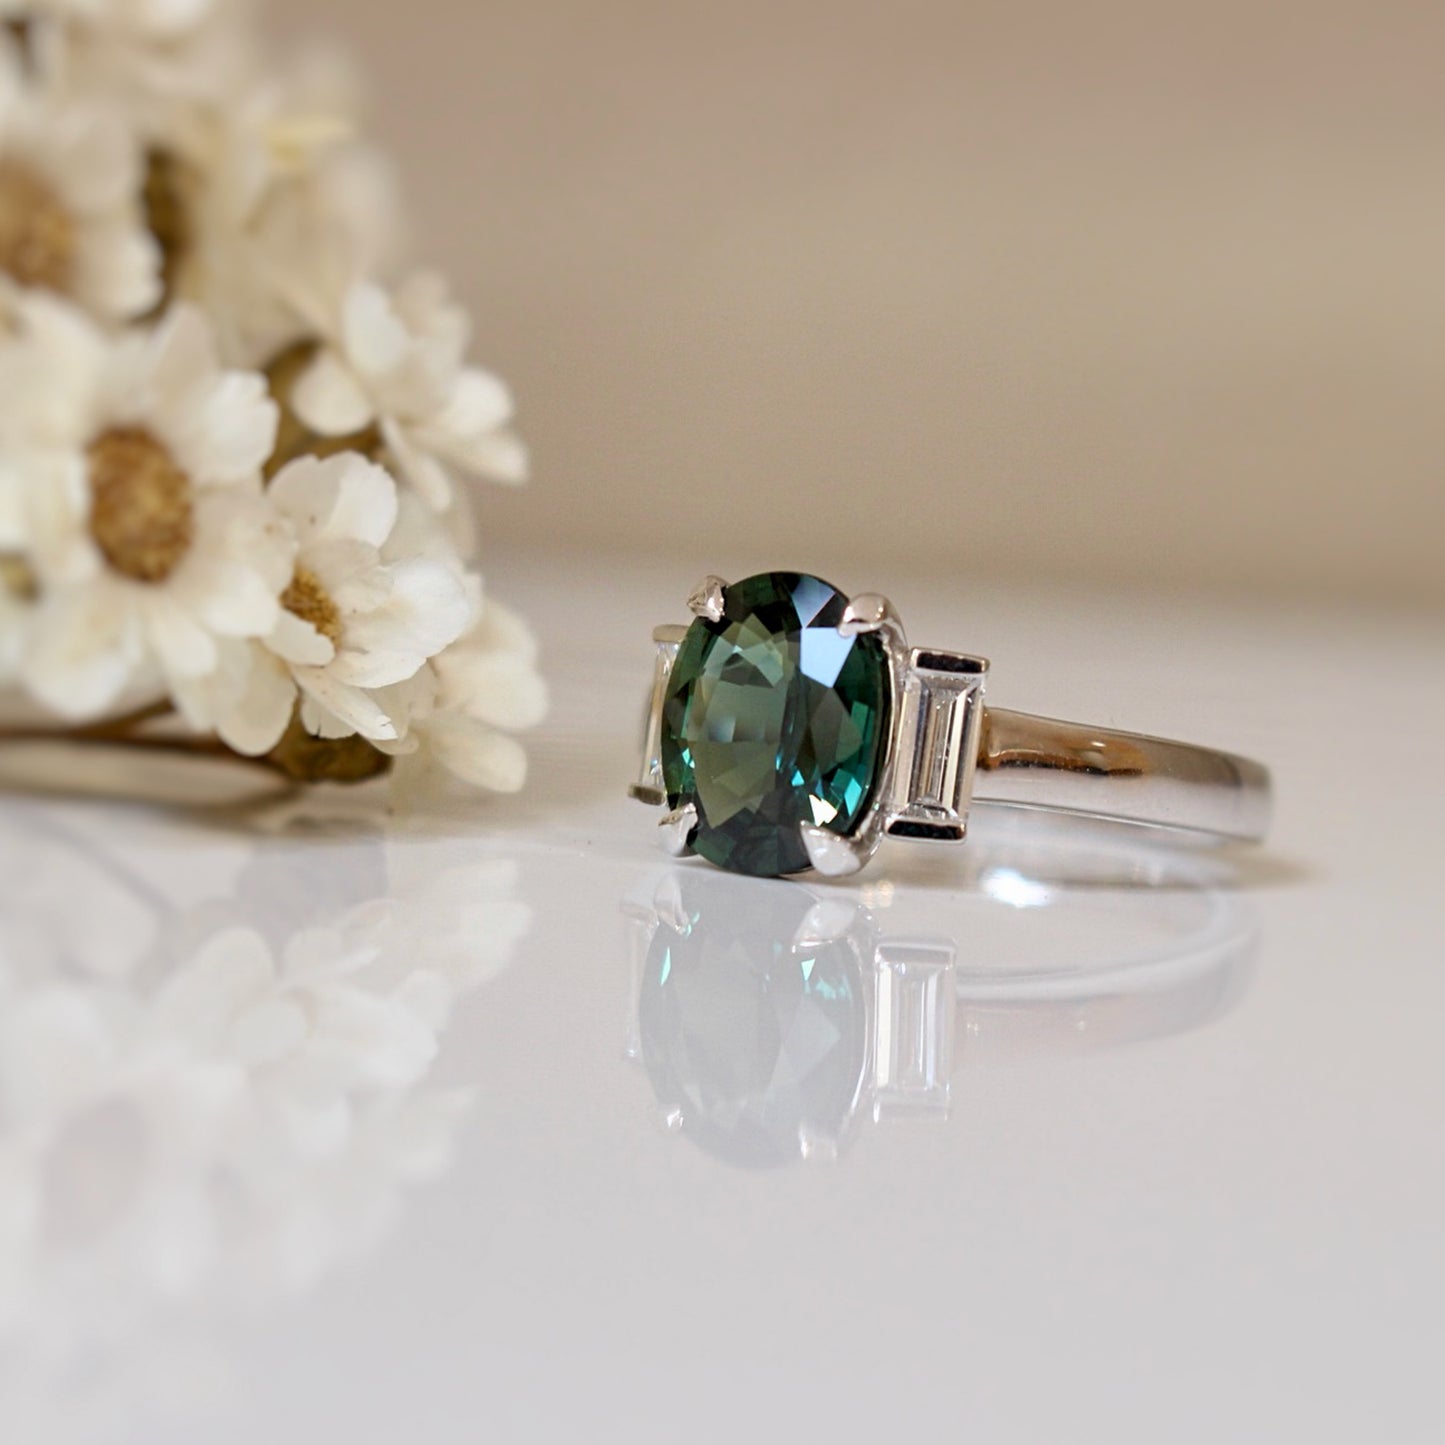 bague de fiançailles avec un superbe saphir vert foret épaulé de chaque côté par des diamants baguette